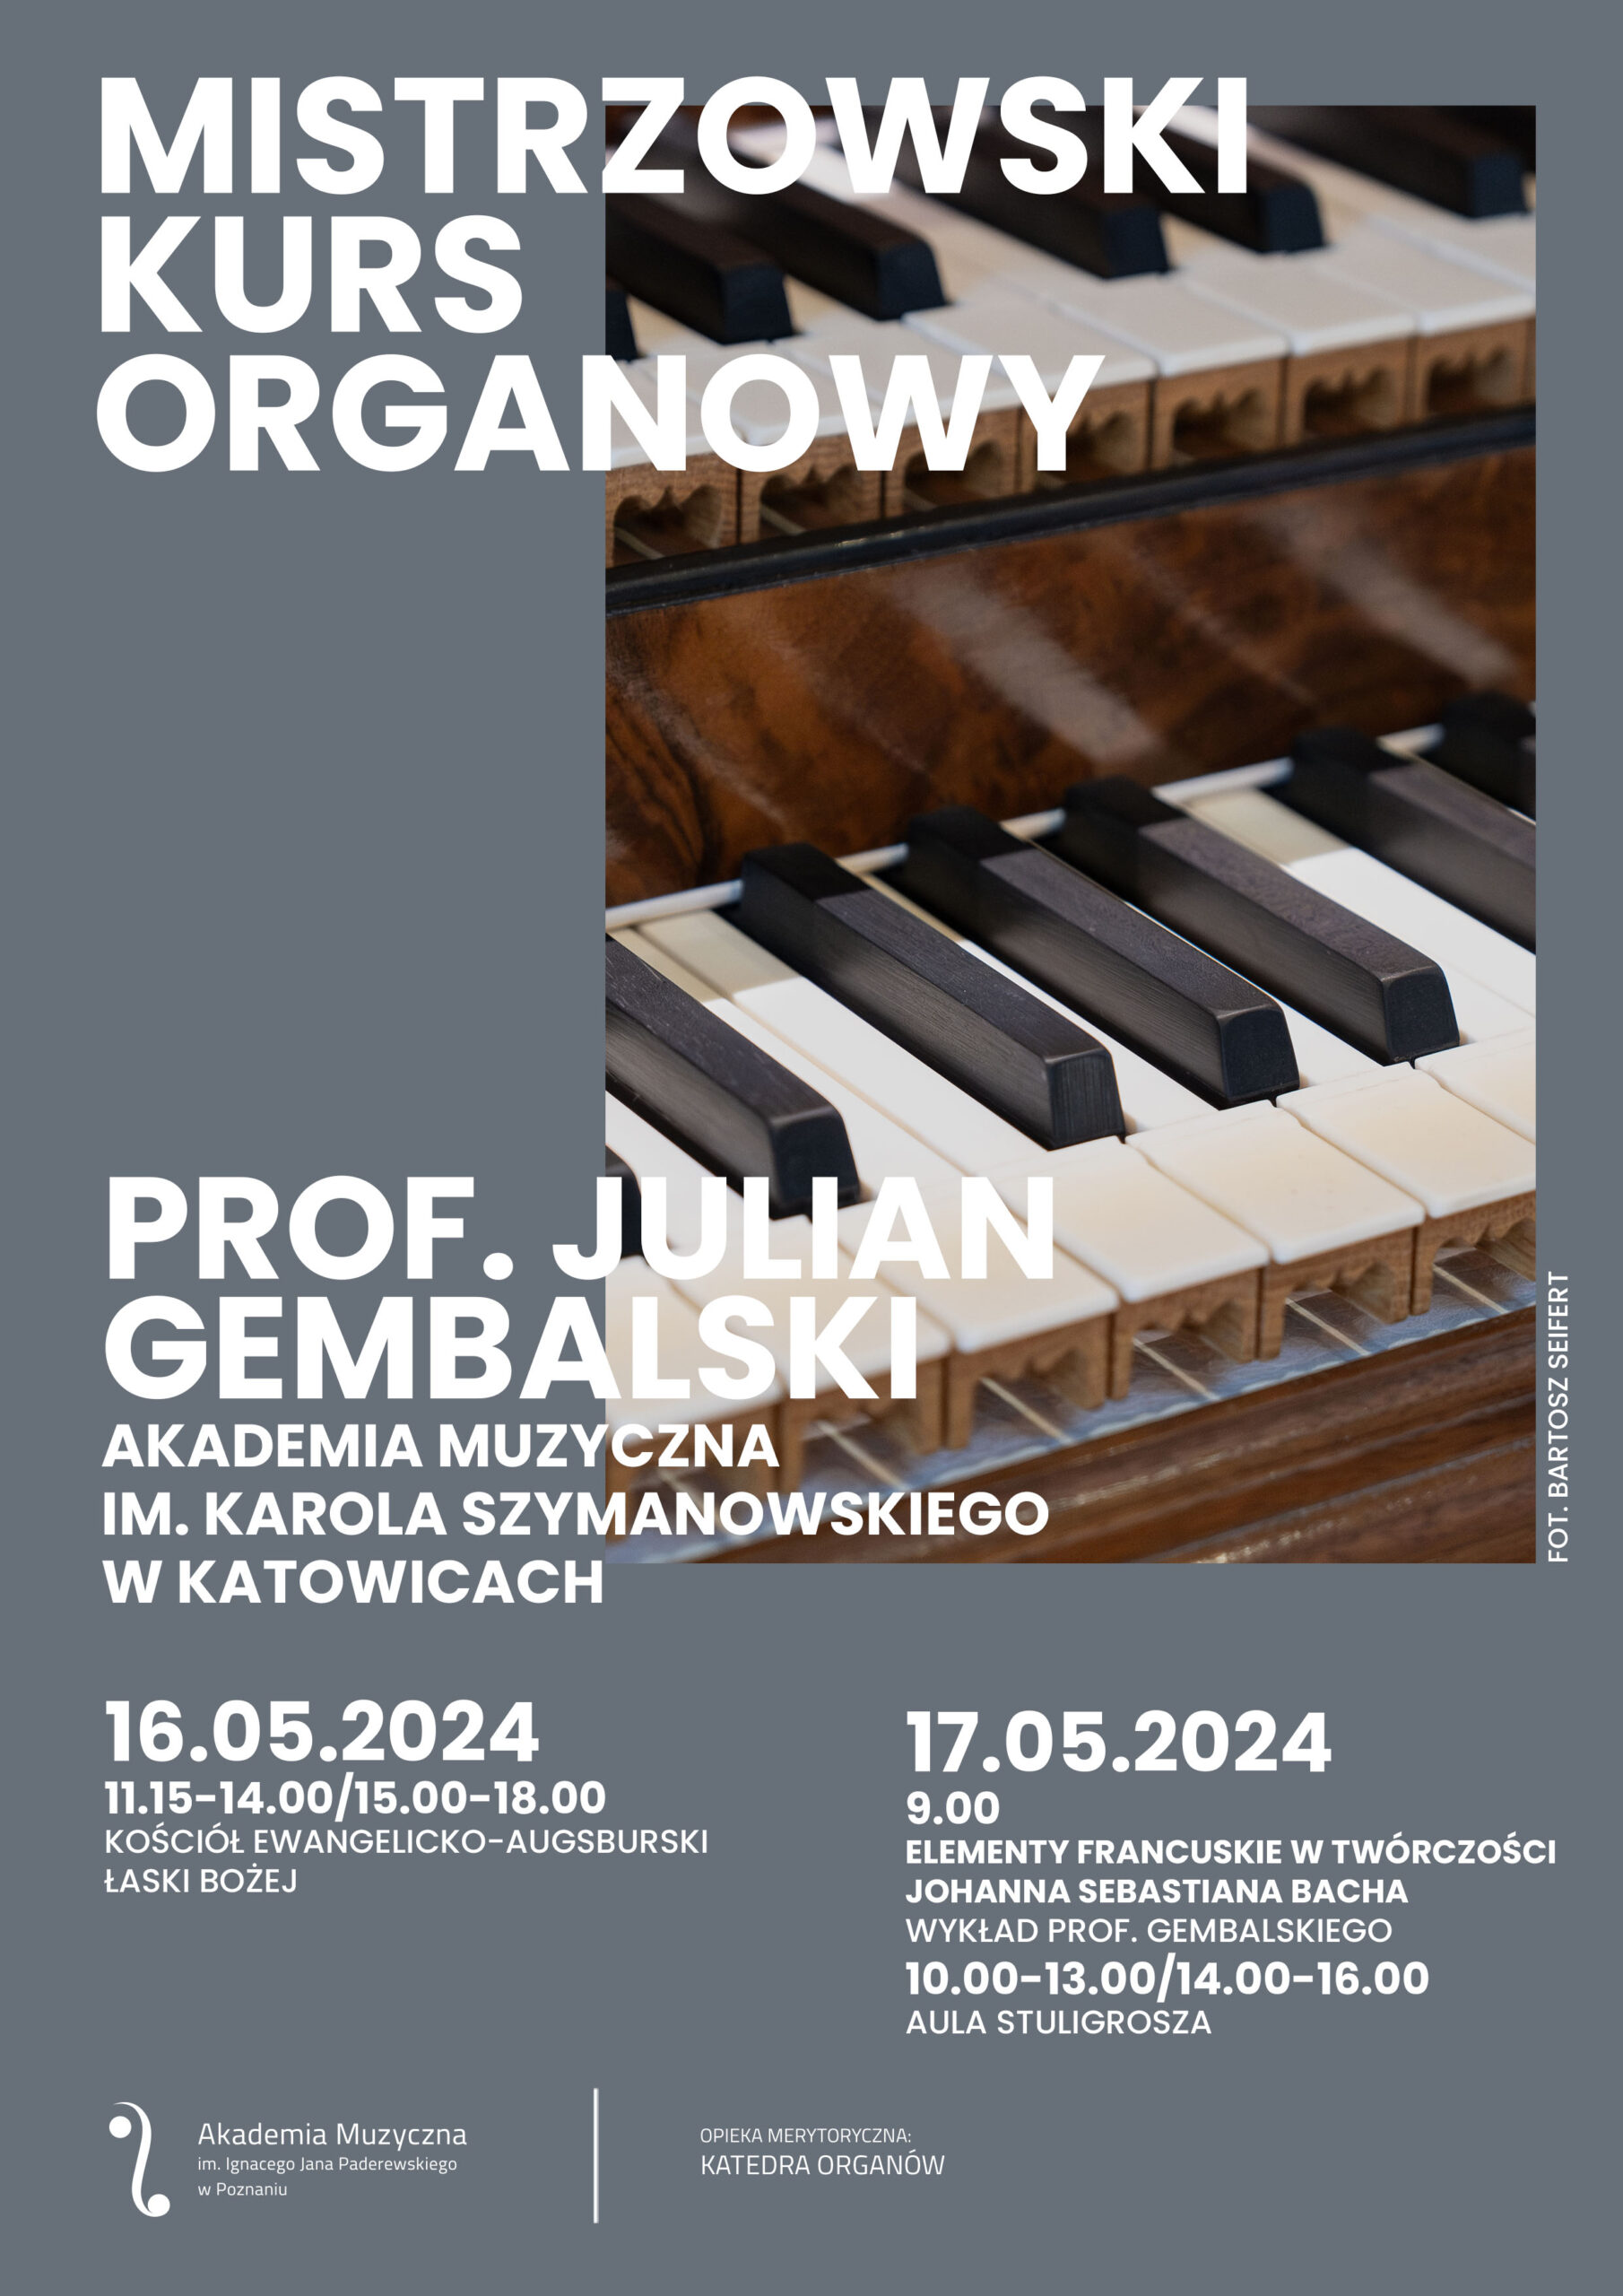 Plakat zawiera informacje o kursie organowym prof. Juliana Gembalskiego w dniach 16-17 maja 2024